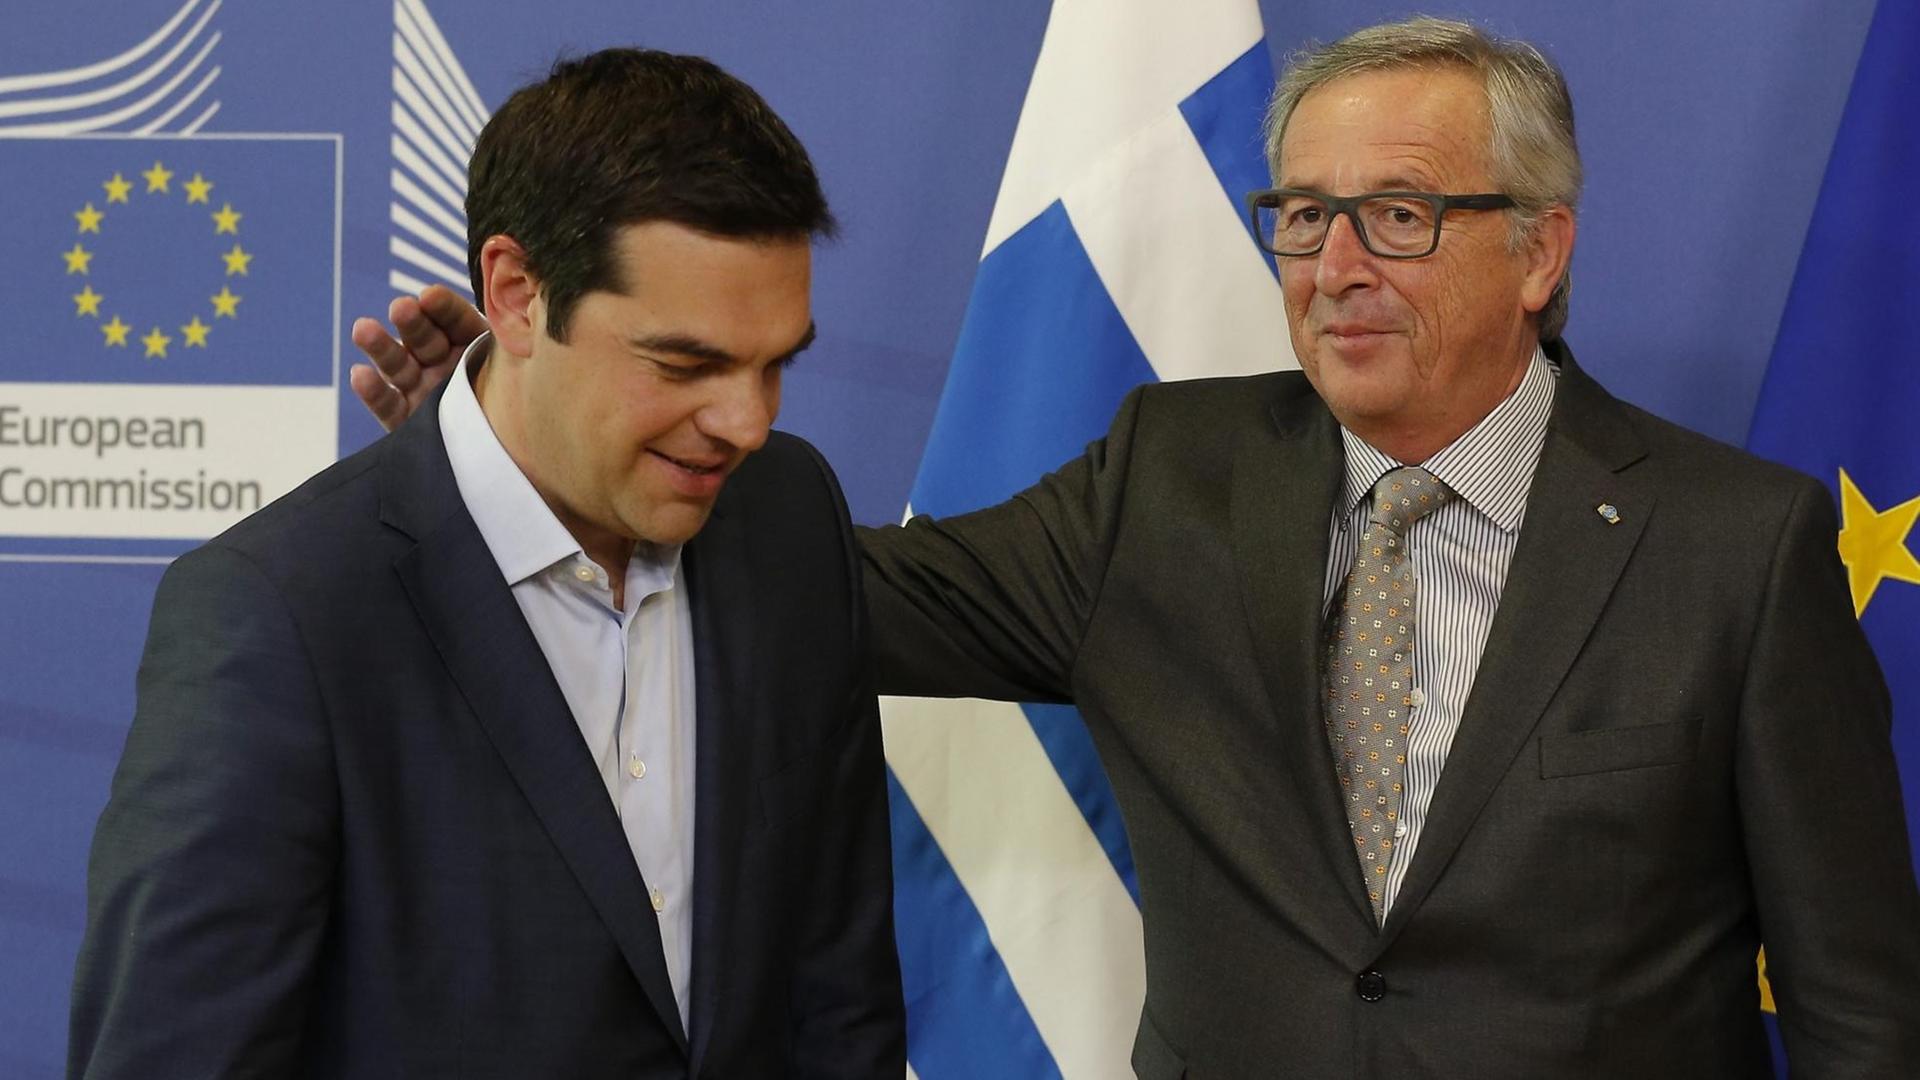 Jean-Claude Juncker begrüßt Alexis Tsipras in Brüssel. Er legt ihm die Hand auf die Schulter.